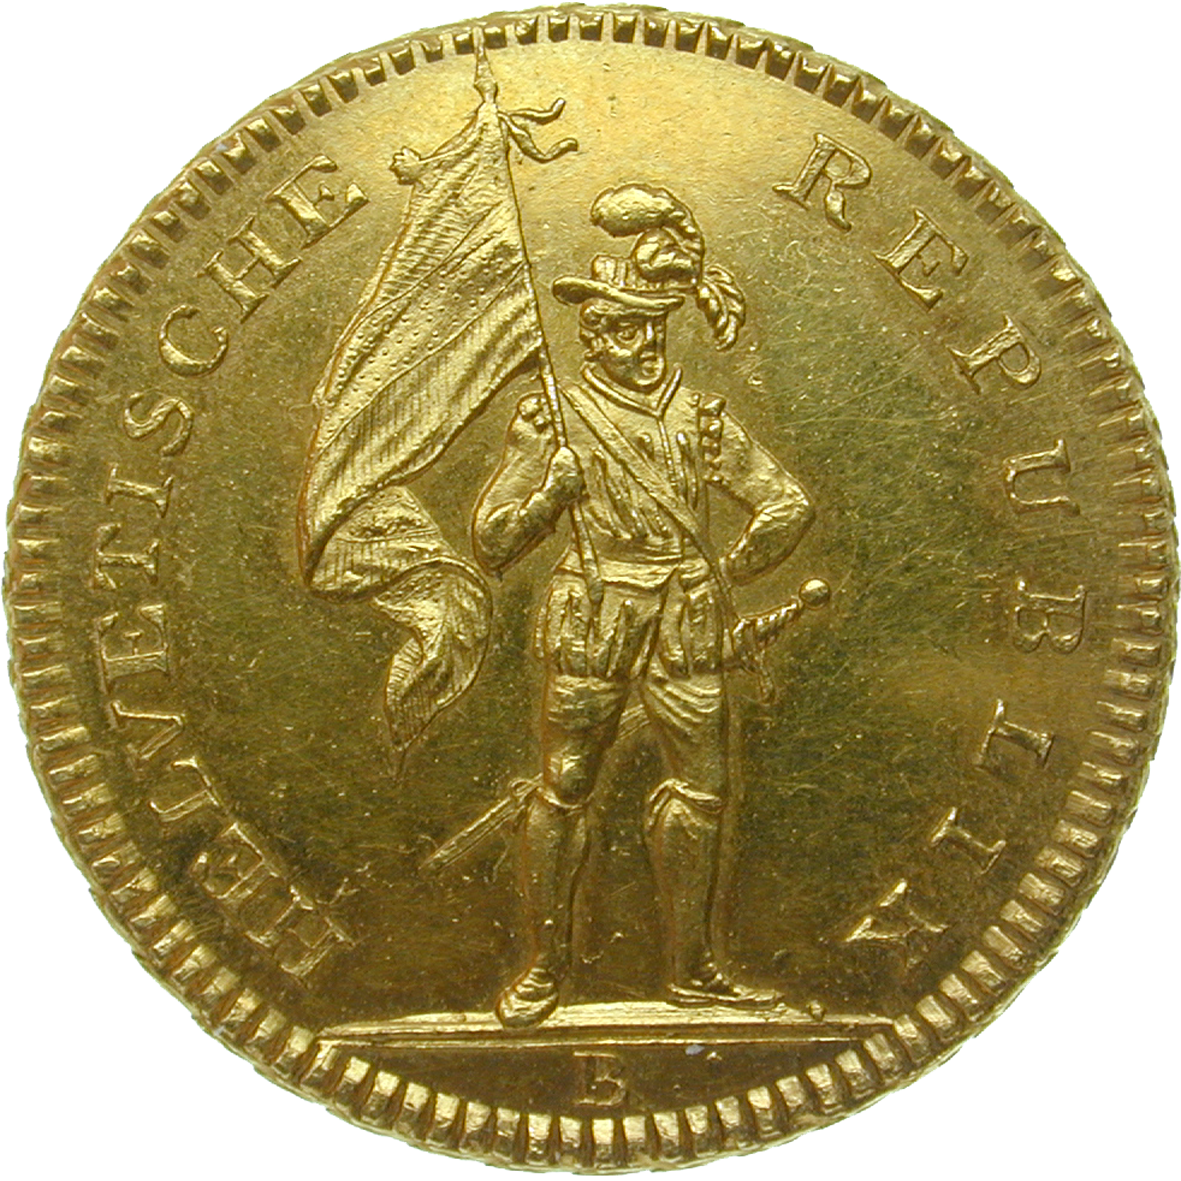 Helvetische Republik, 32 Franken 1800 (obverse)